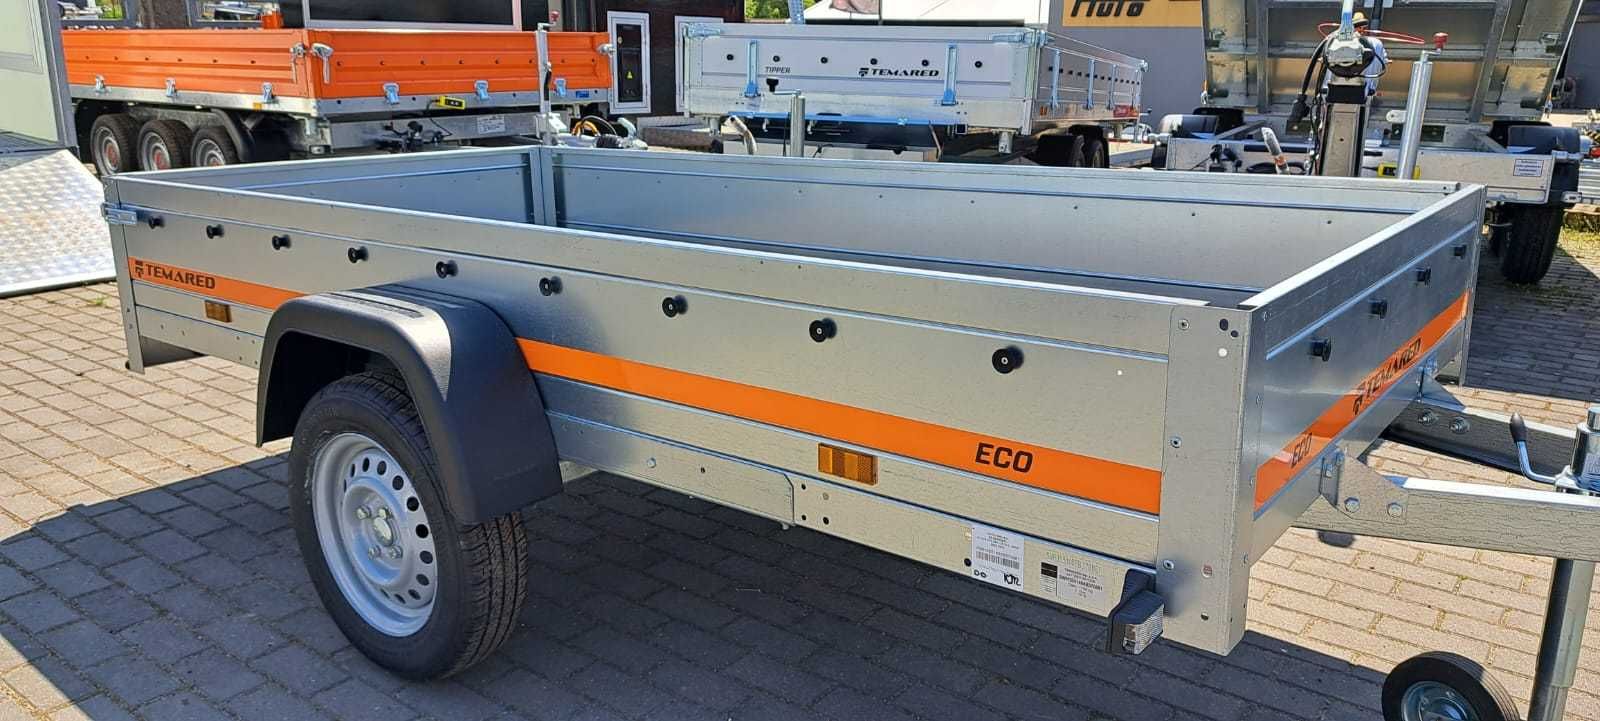 PROMOCJA Przyczepka lekka jednoosiowa Eco 2612 z burtami 750kg